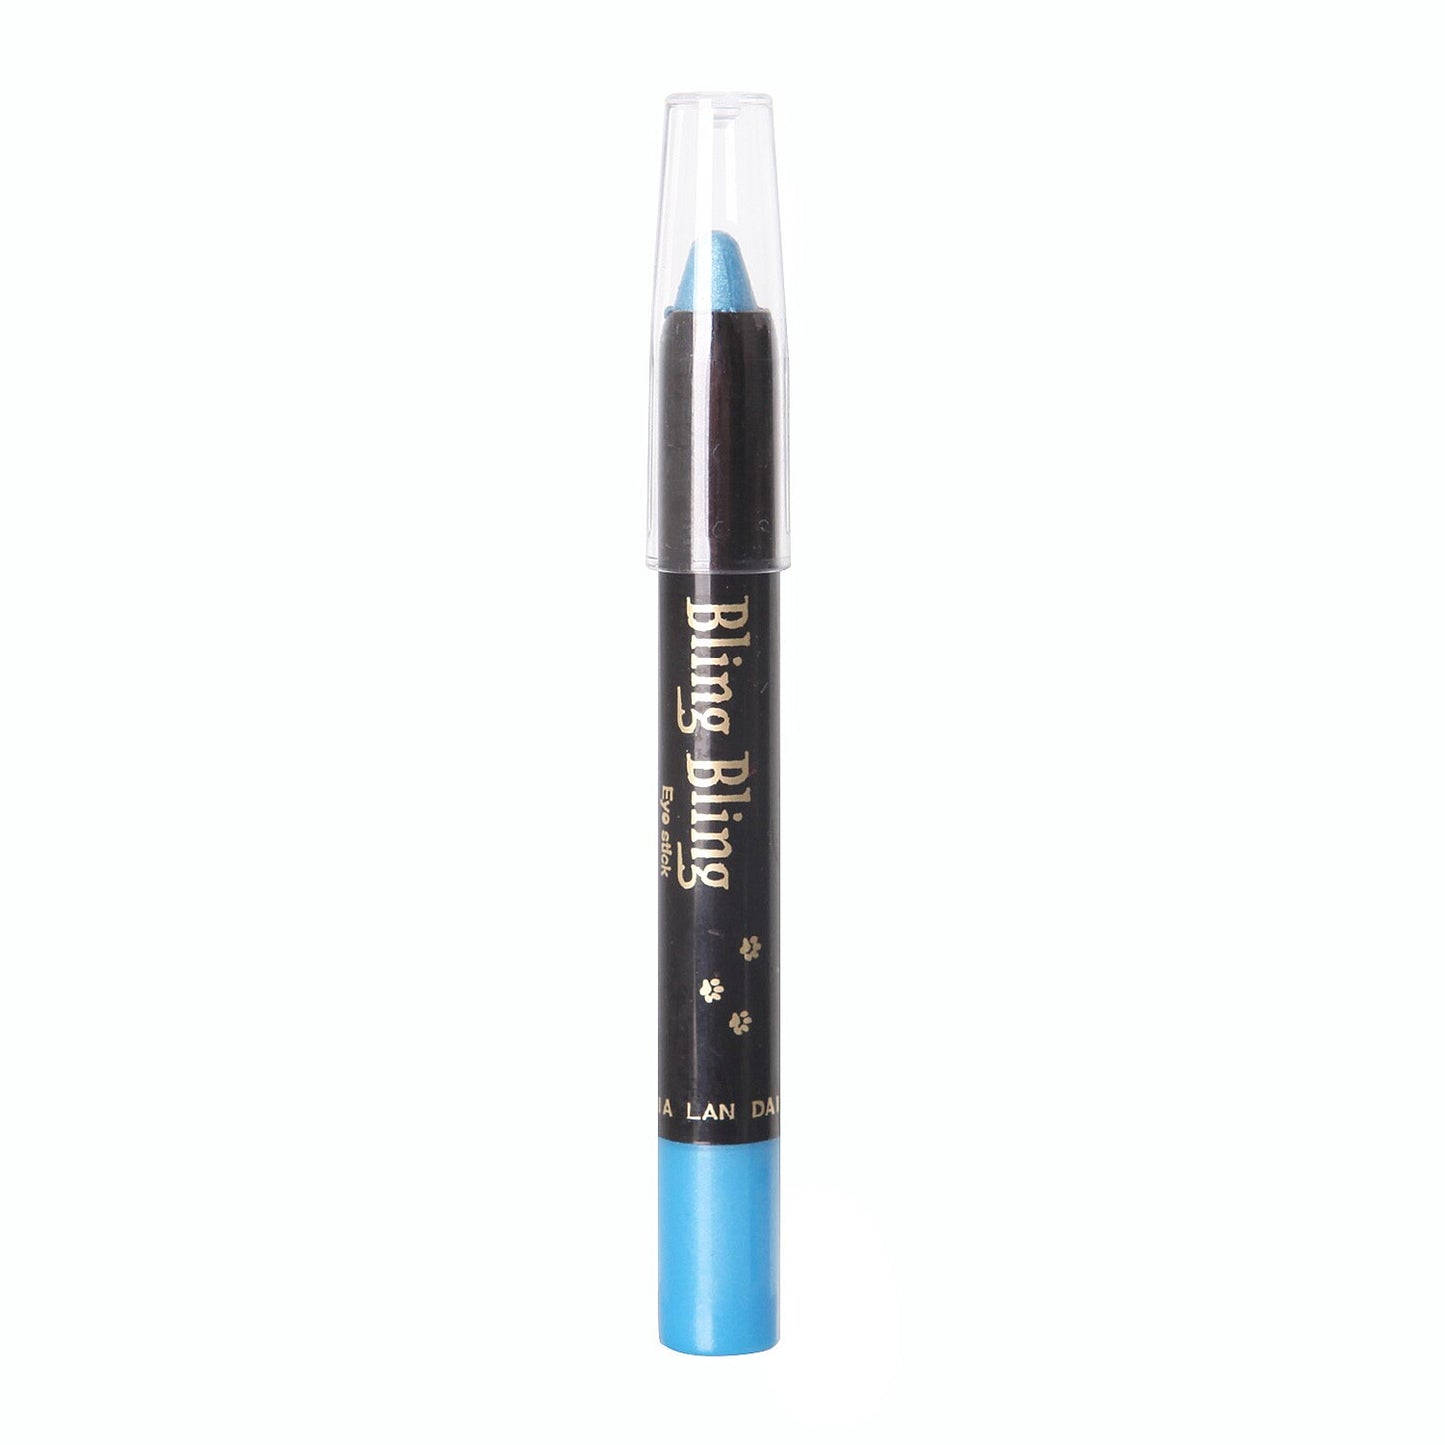 Pearlescent 2 in 1 Eyeshadow Eyeliner pen